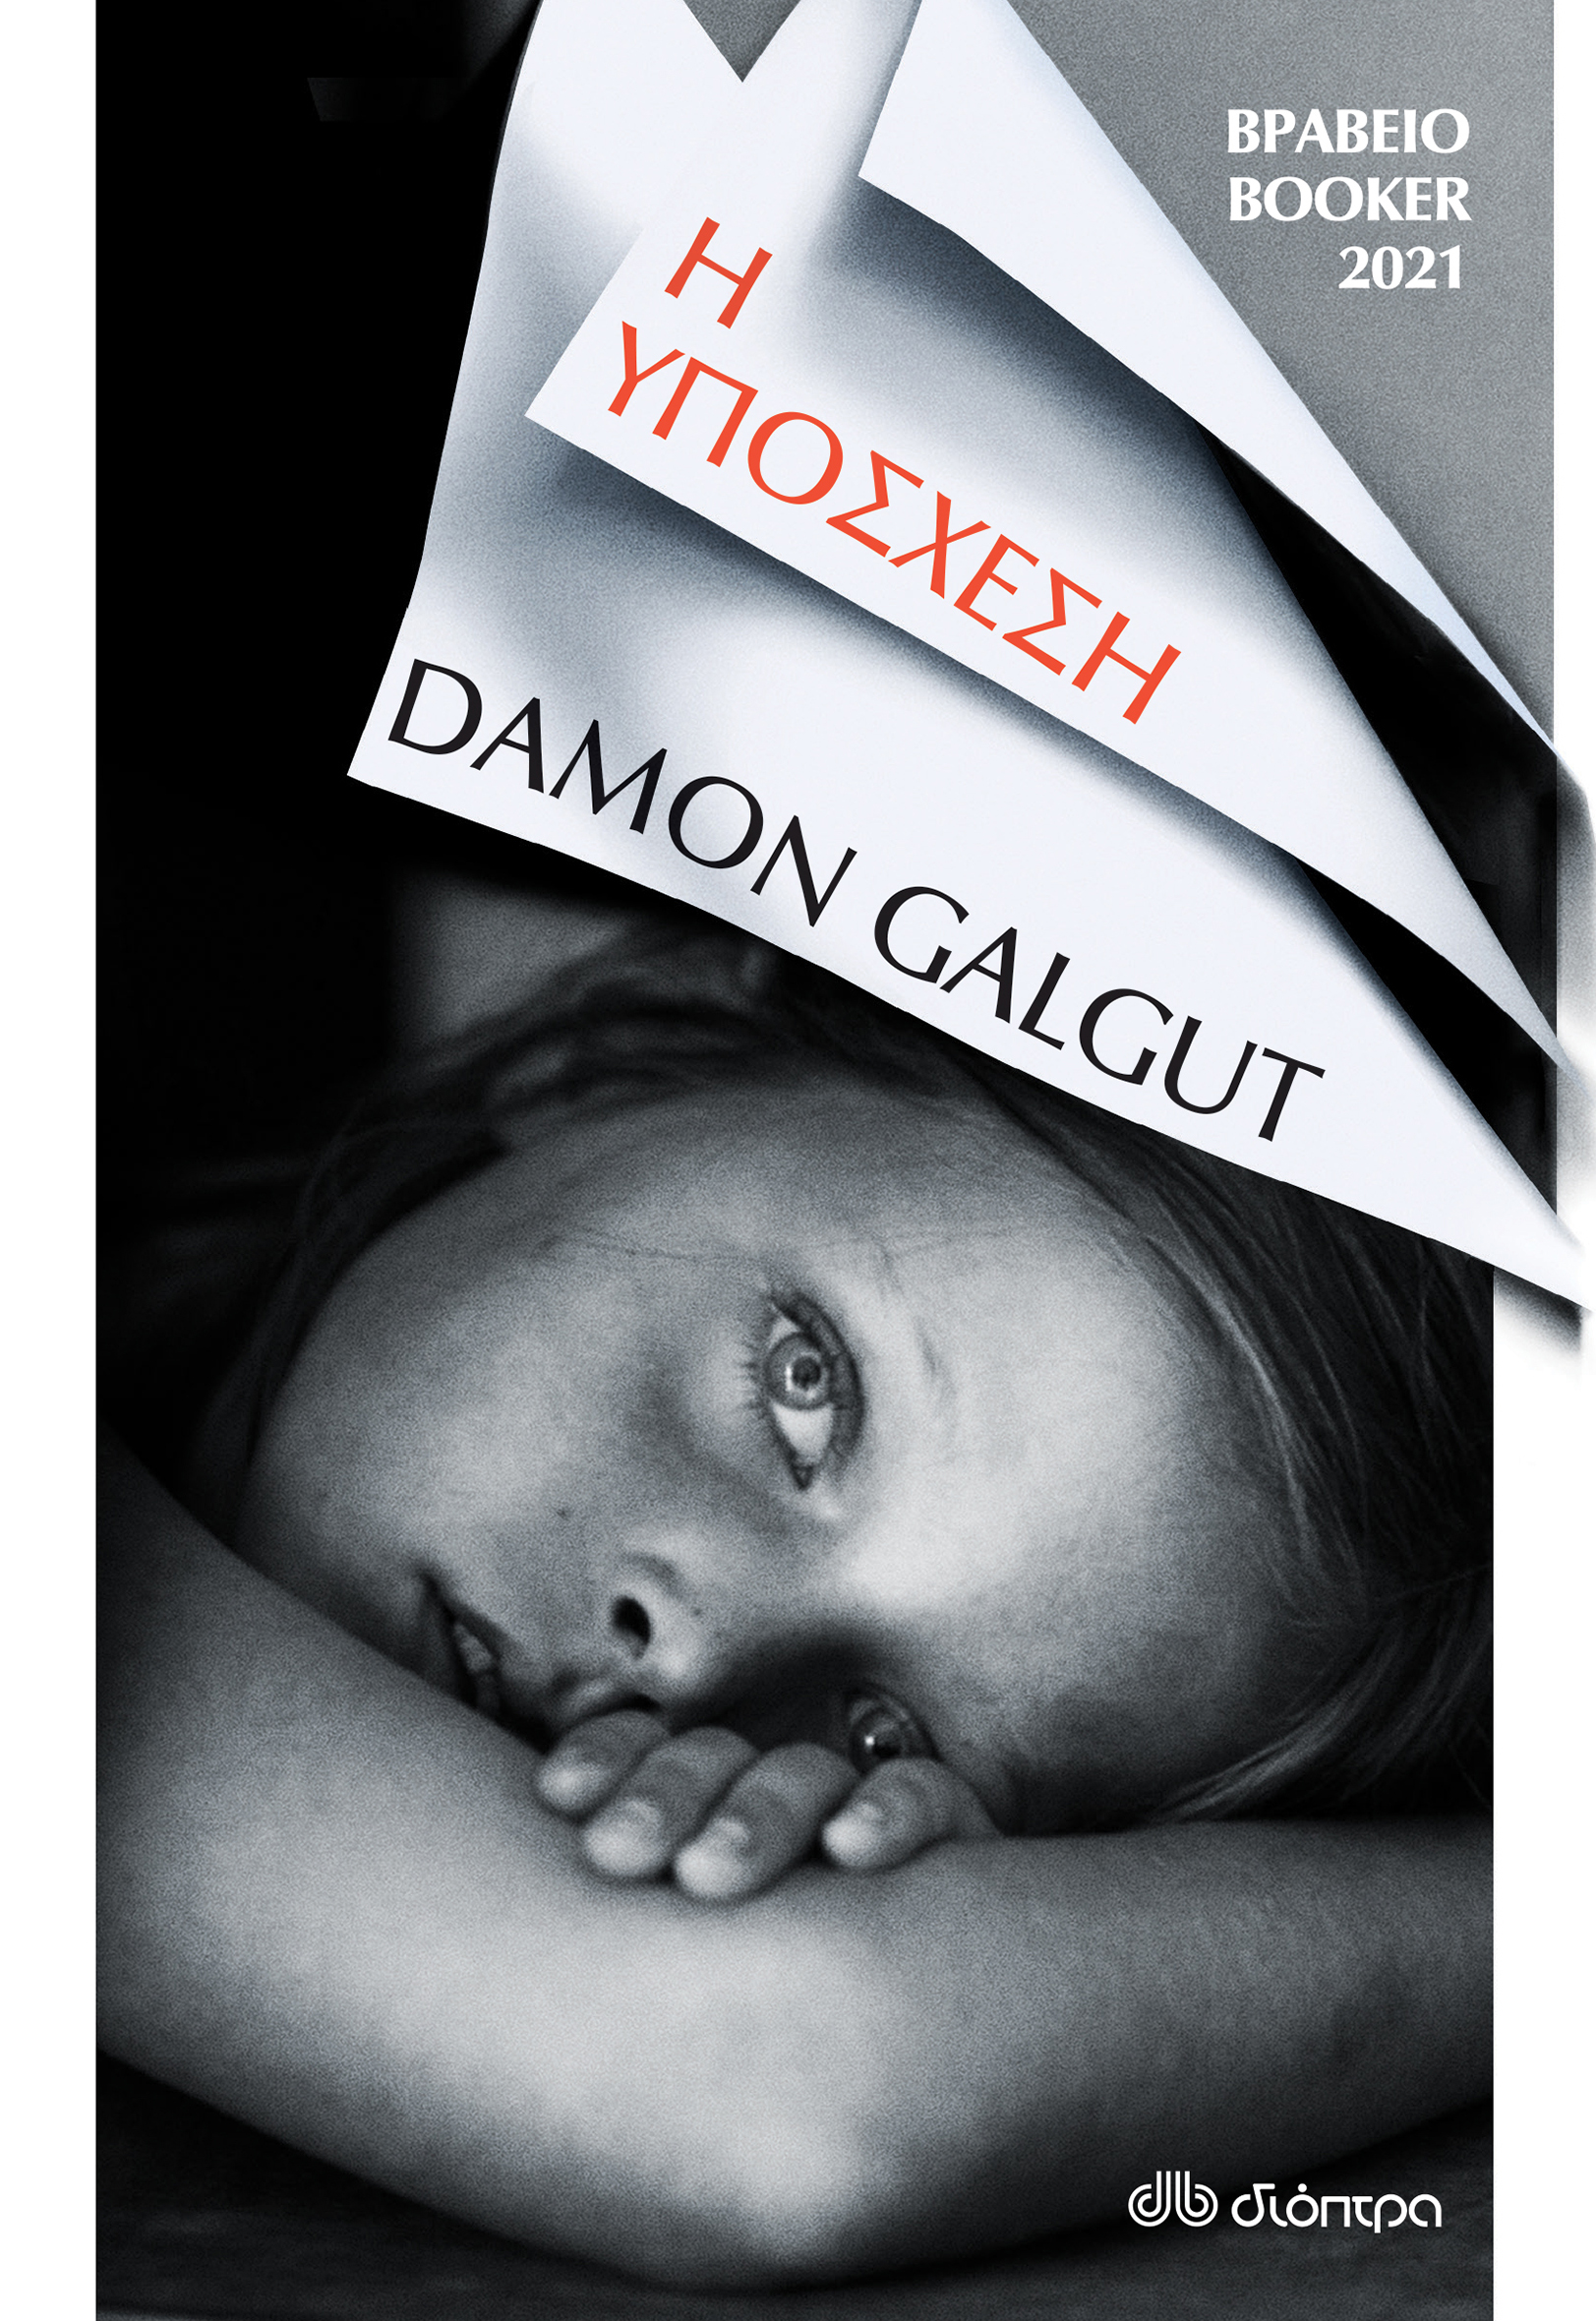 Οι εκδόσεις Διόπτρα μάς προτείνουν το μυθιστόρημα "Η Υπόσχεση" του Damon Galgut. 